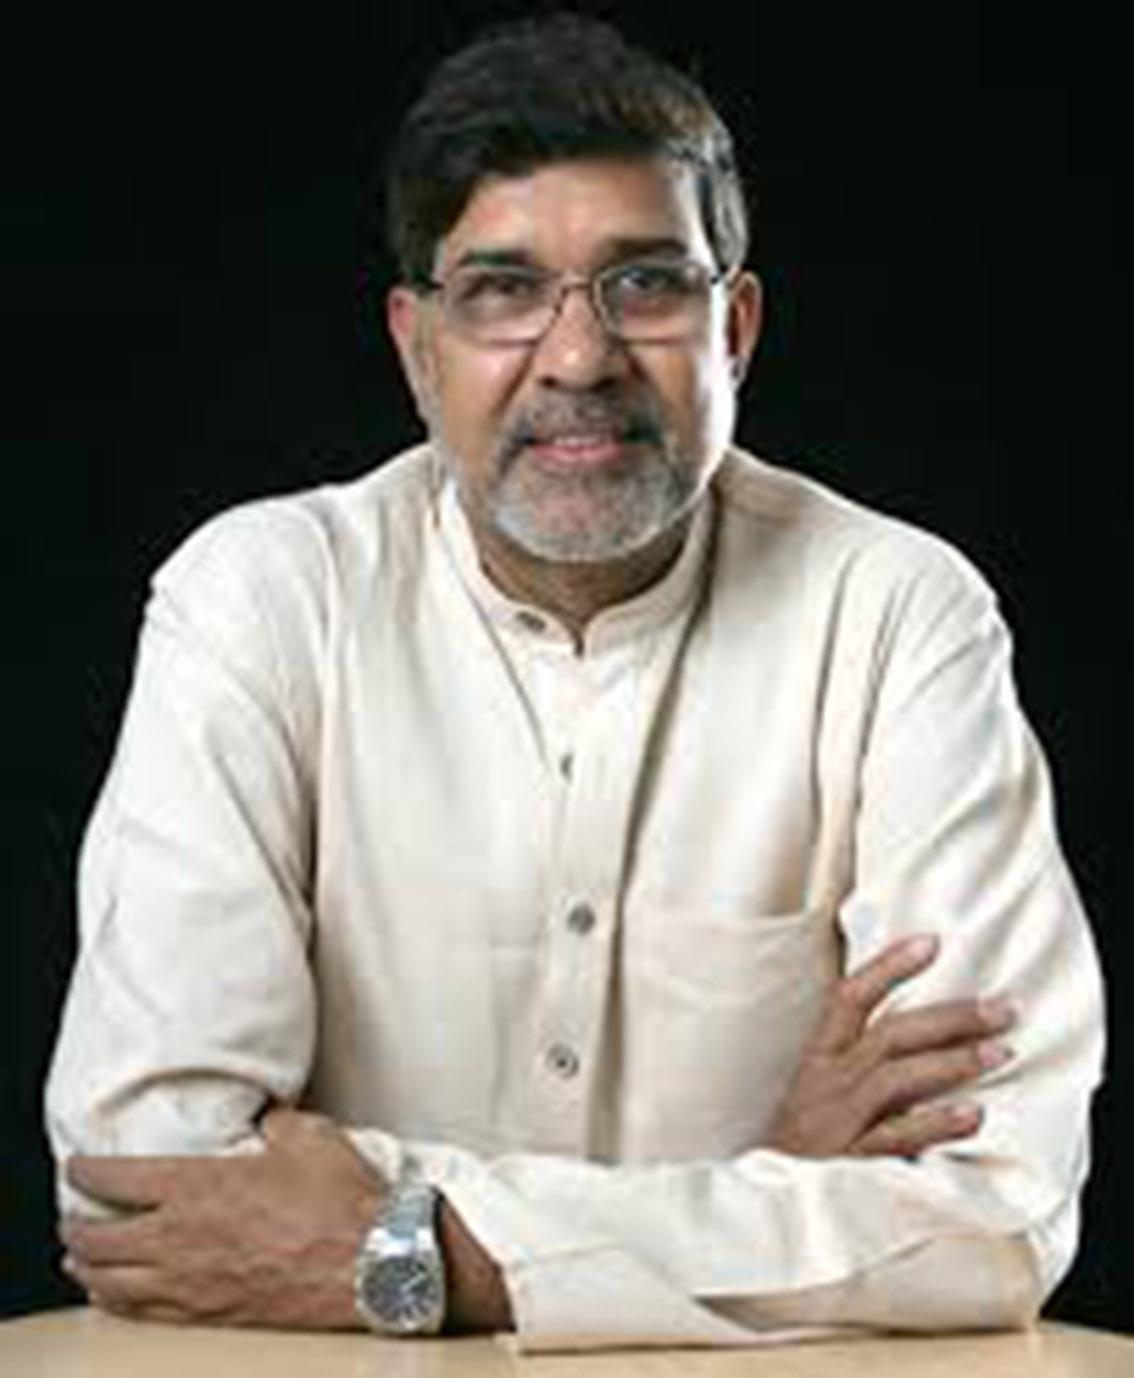 Kailash Satyarthi delar på fredspriset med Malala Yousafzai. Han har varit aktiv i kampen mot barnarbete sedan 1990-talet och driver bland annat organisationen Bachpan Bachao Andolan som jobbar med att befria barn från slavliknande förhållanden.